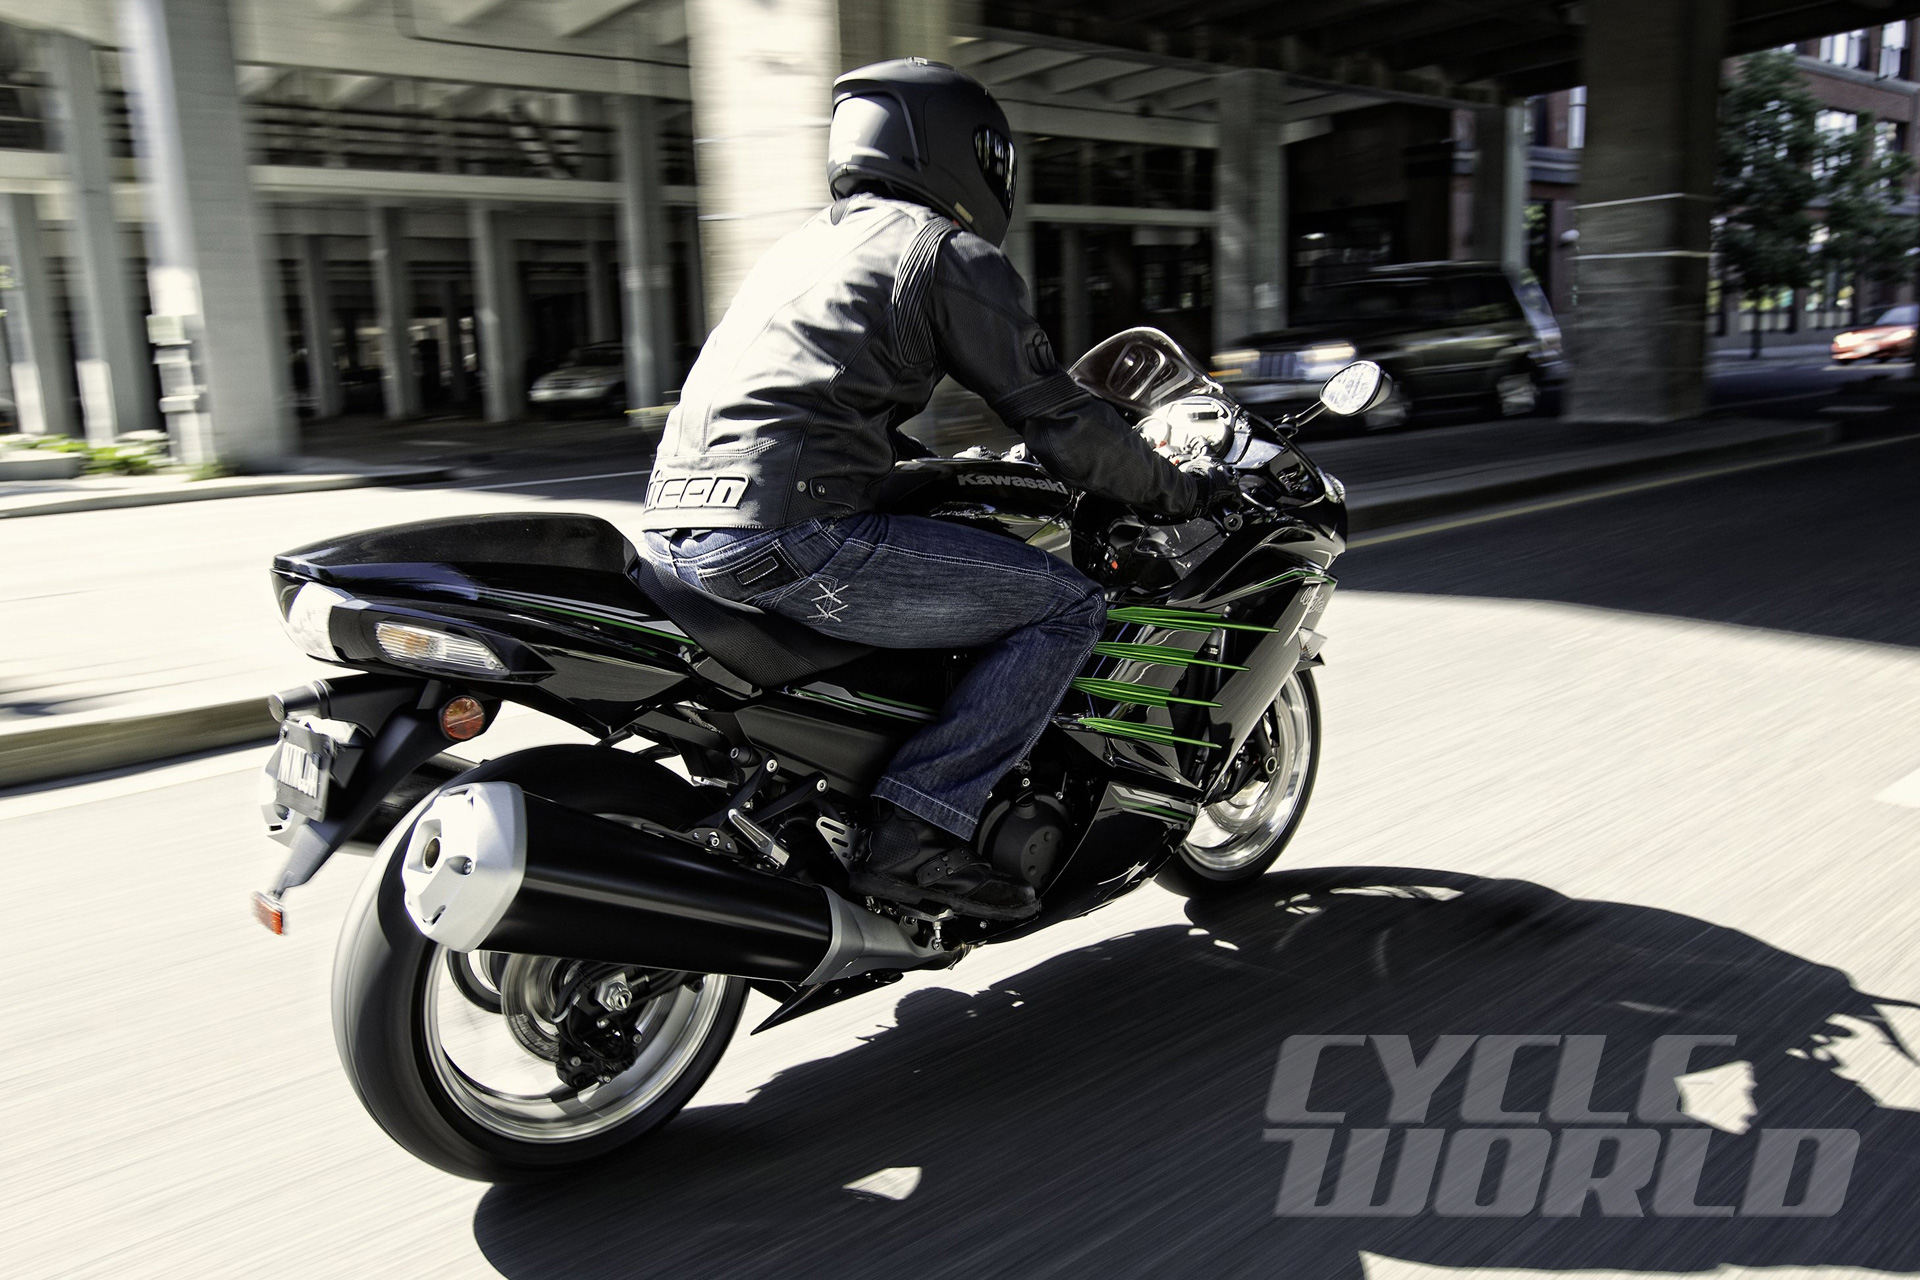 Ten Best Bikes 2013- Best Open-Class Streetbike: Kawasaki Ninja ZX 